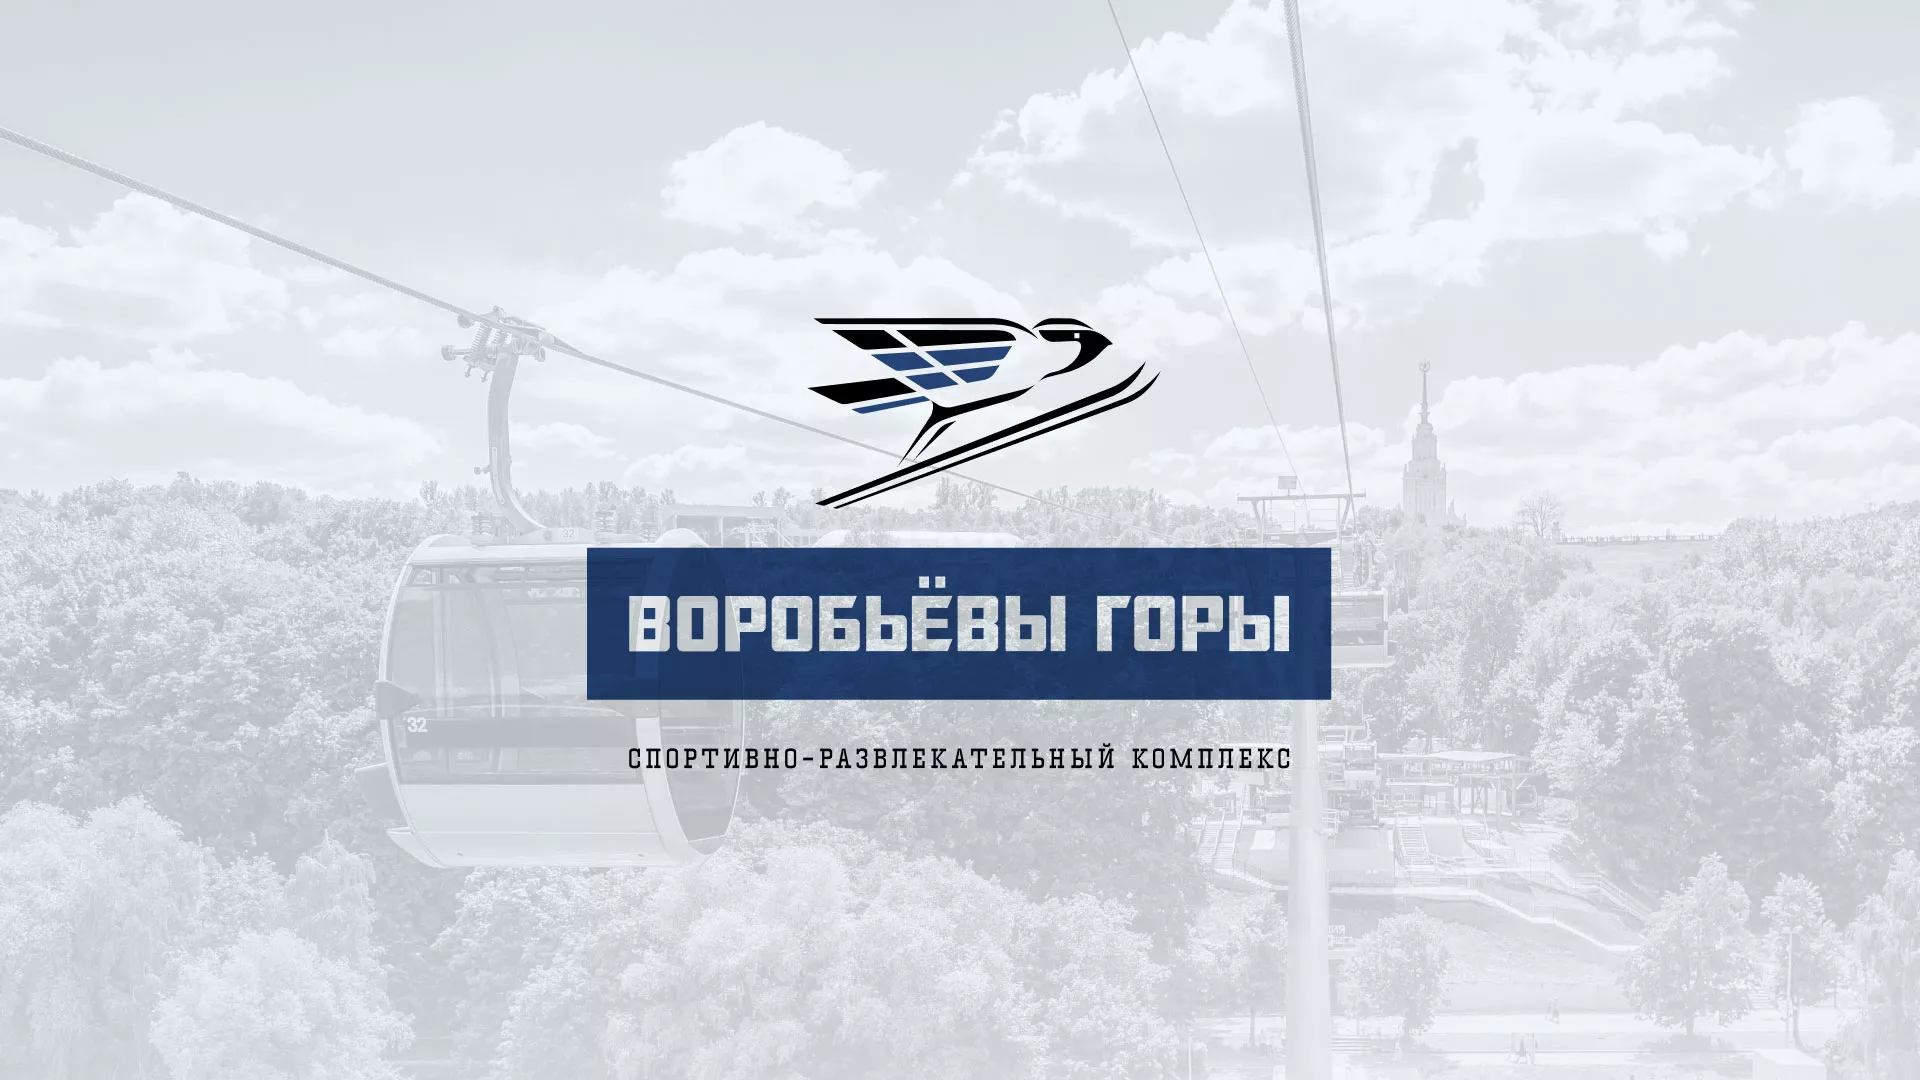 Разработка сайта в Бирюче для спортивно-развлекательного комплекса «Воробьёвы горы»